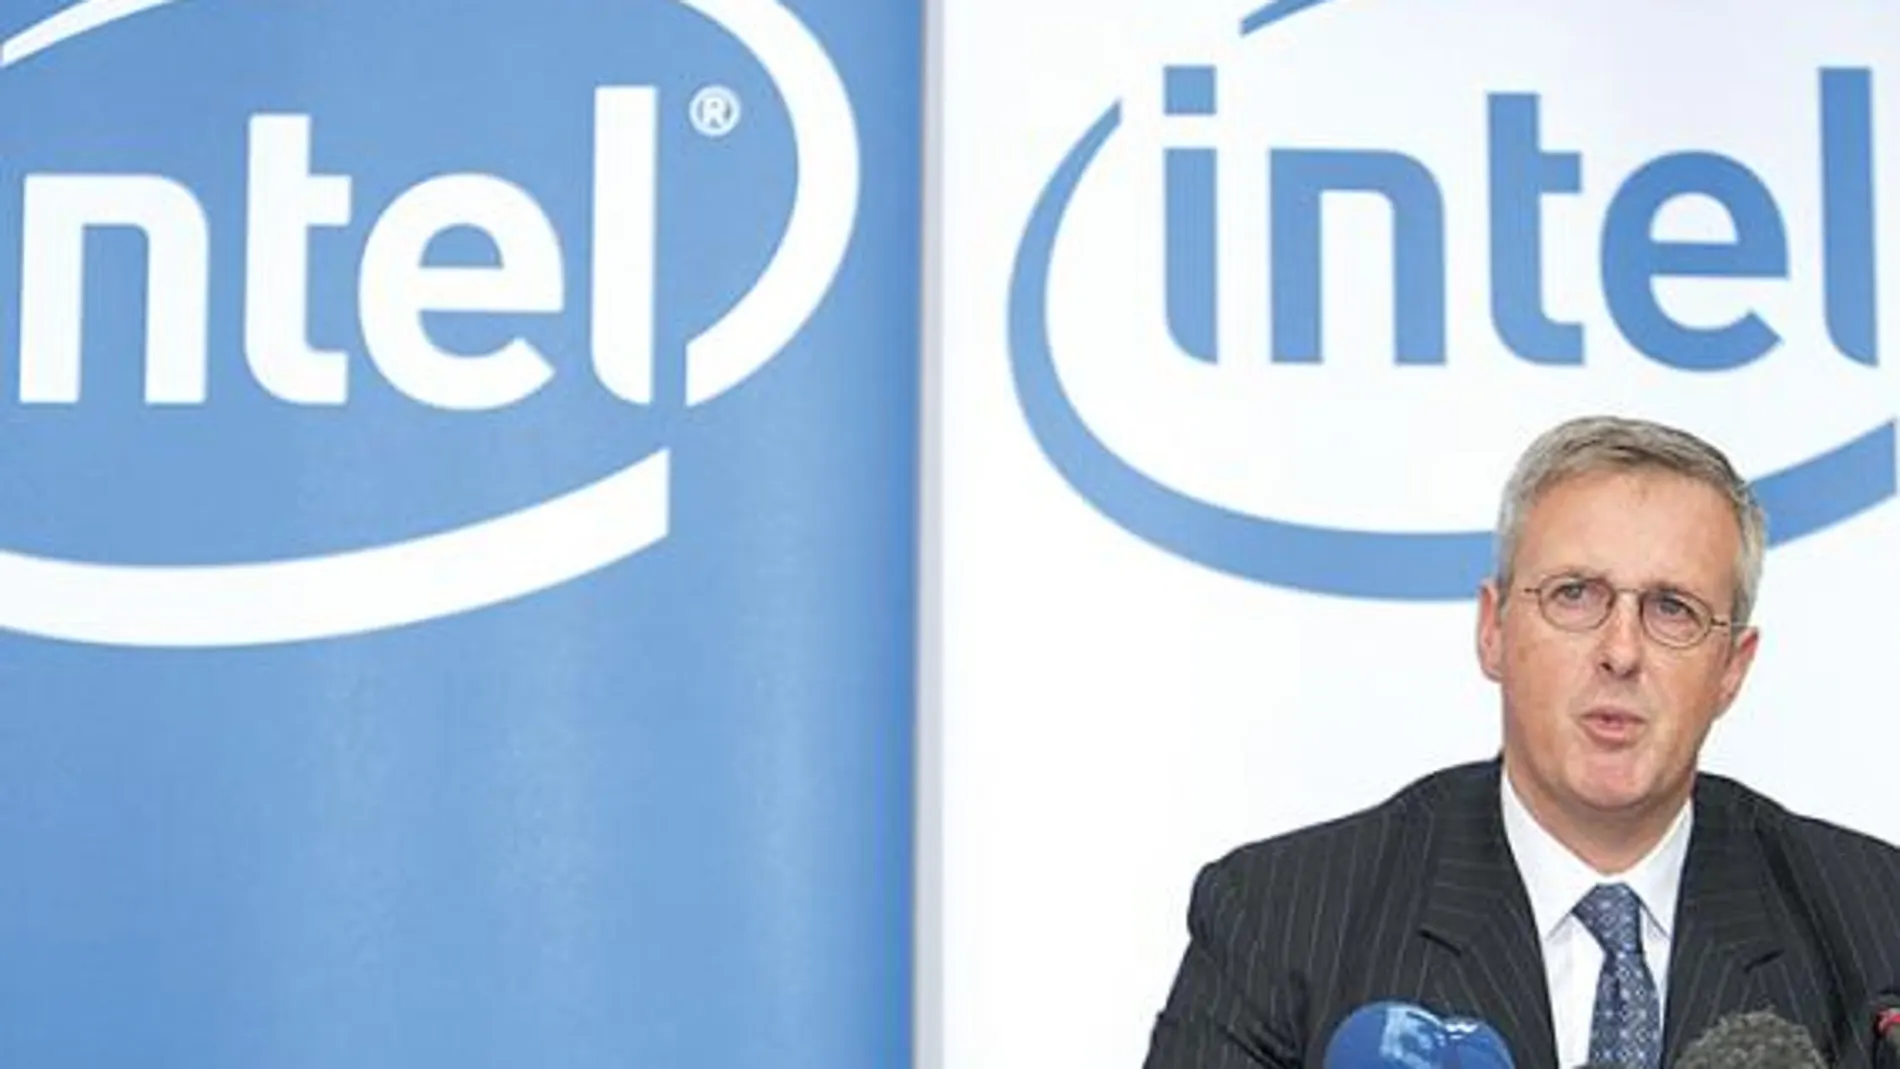 Bruselas impone a Intel una multa récord de 1.060 millones de euros